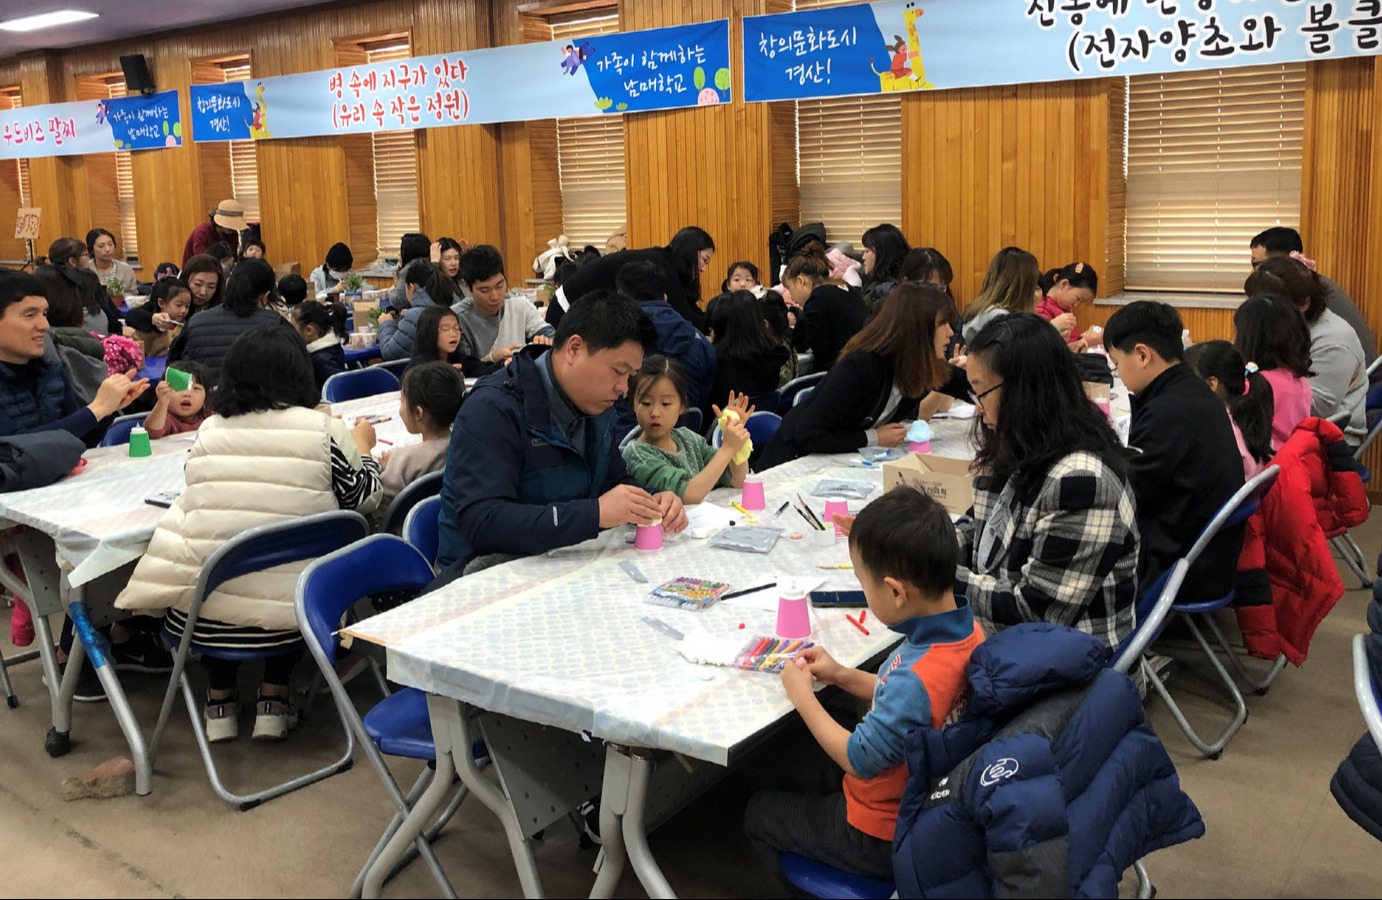 경산시는 지난 16일 경산시농업인회관에서 시민 240가족이 참여한 가운데 올해의 마지막 ‘남매학교’를 성황리에 개최했다.경산시.